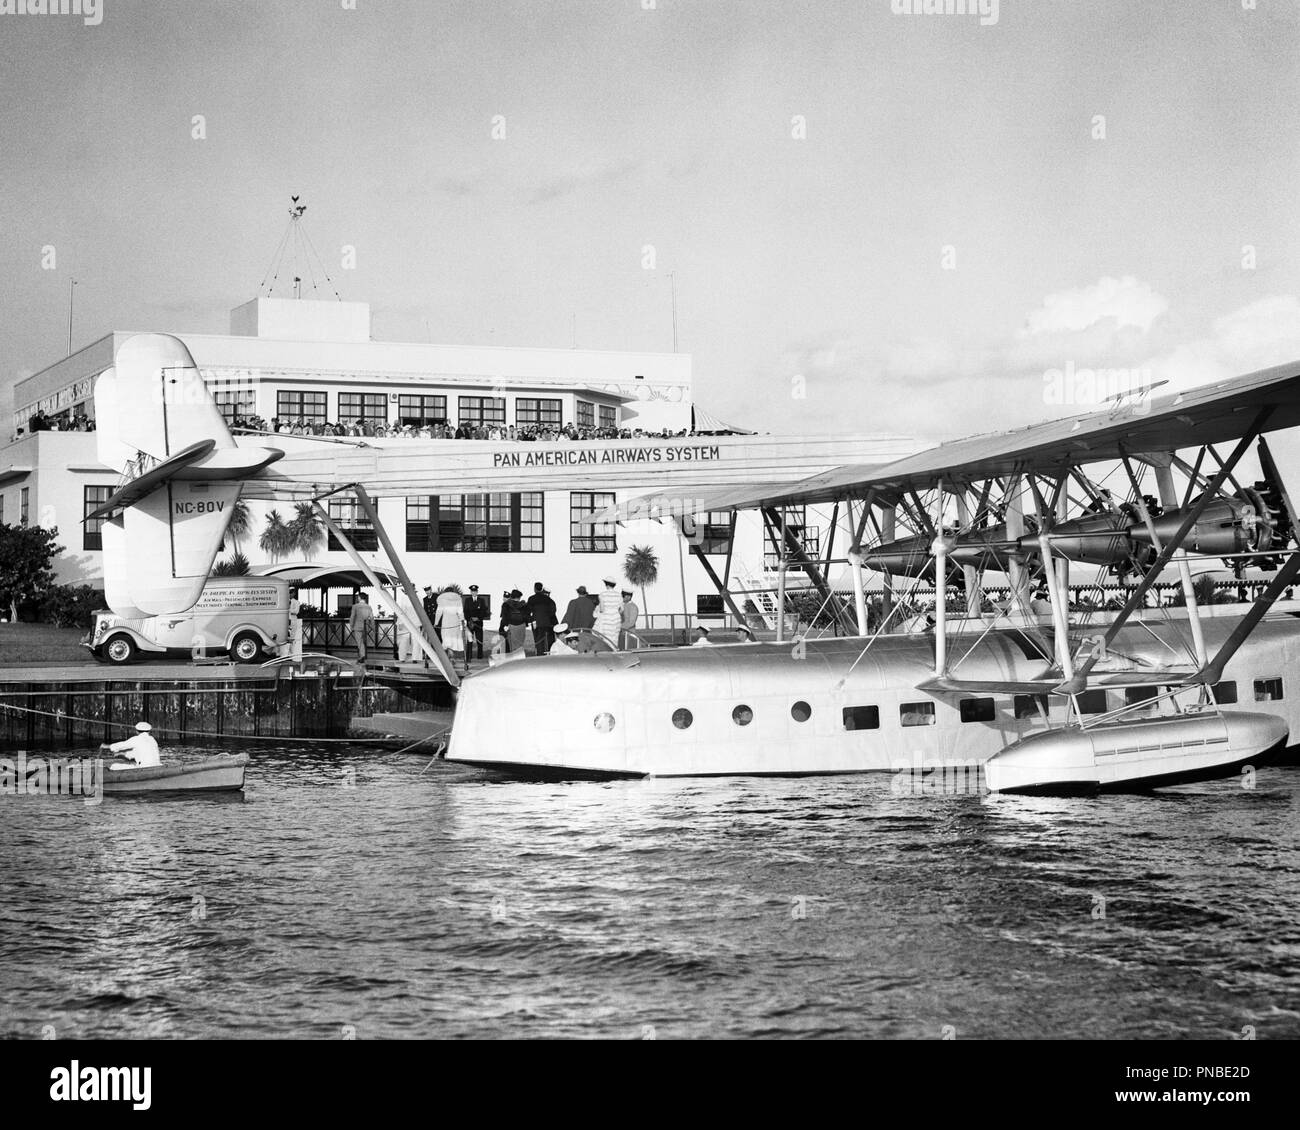 1930 Pan American Airways SYSTEM Sikorsky S-40 FLUGBOOT NC-80V AMERIKANISCHEN CLIPPER AUF SEE FLUGZEUG Flughafen Miami FLORIDA USA-a2249 HAR 001 HARS HAVANNA B&W WEITWINKEL ABENTEUER TÄTIGEN PILOTEN FLUGZEUGE KUNDENSERVICE SILHOUETTE UND 20. JAHRHUNDERT AUFREGUNG ÄUSSERE FORTSCHRITT INNOVATION LUFTFAHRT ZWISCHEN DEN BERUFEN 1931 KEY WEST STILVOLLE ANONYME PROPELLOR KUBA FL Pan American World Airways AIR MAIL AMERIKANISCHEN CLIPPER SCHWARZ UND WEISS FLUGBOOT HAR 001 ALTMODISCH PAN PAN AMERICAN AIRWAYS FLUG MIT DEM WASSERFLUGZEUG Stockfoto